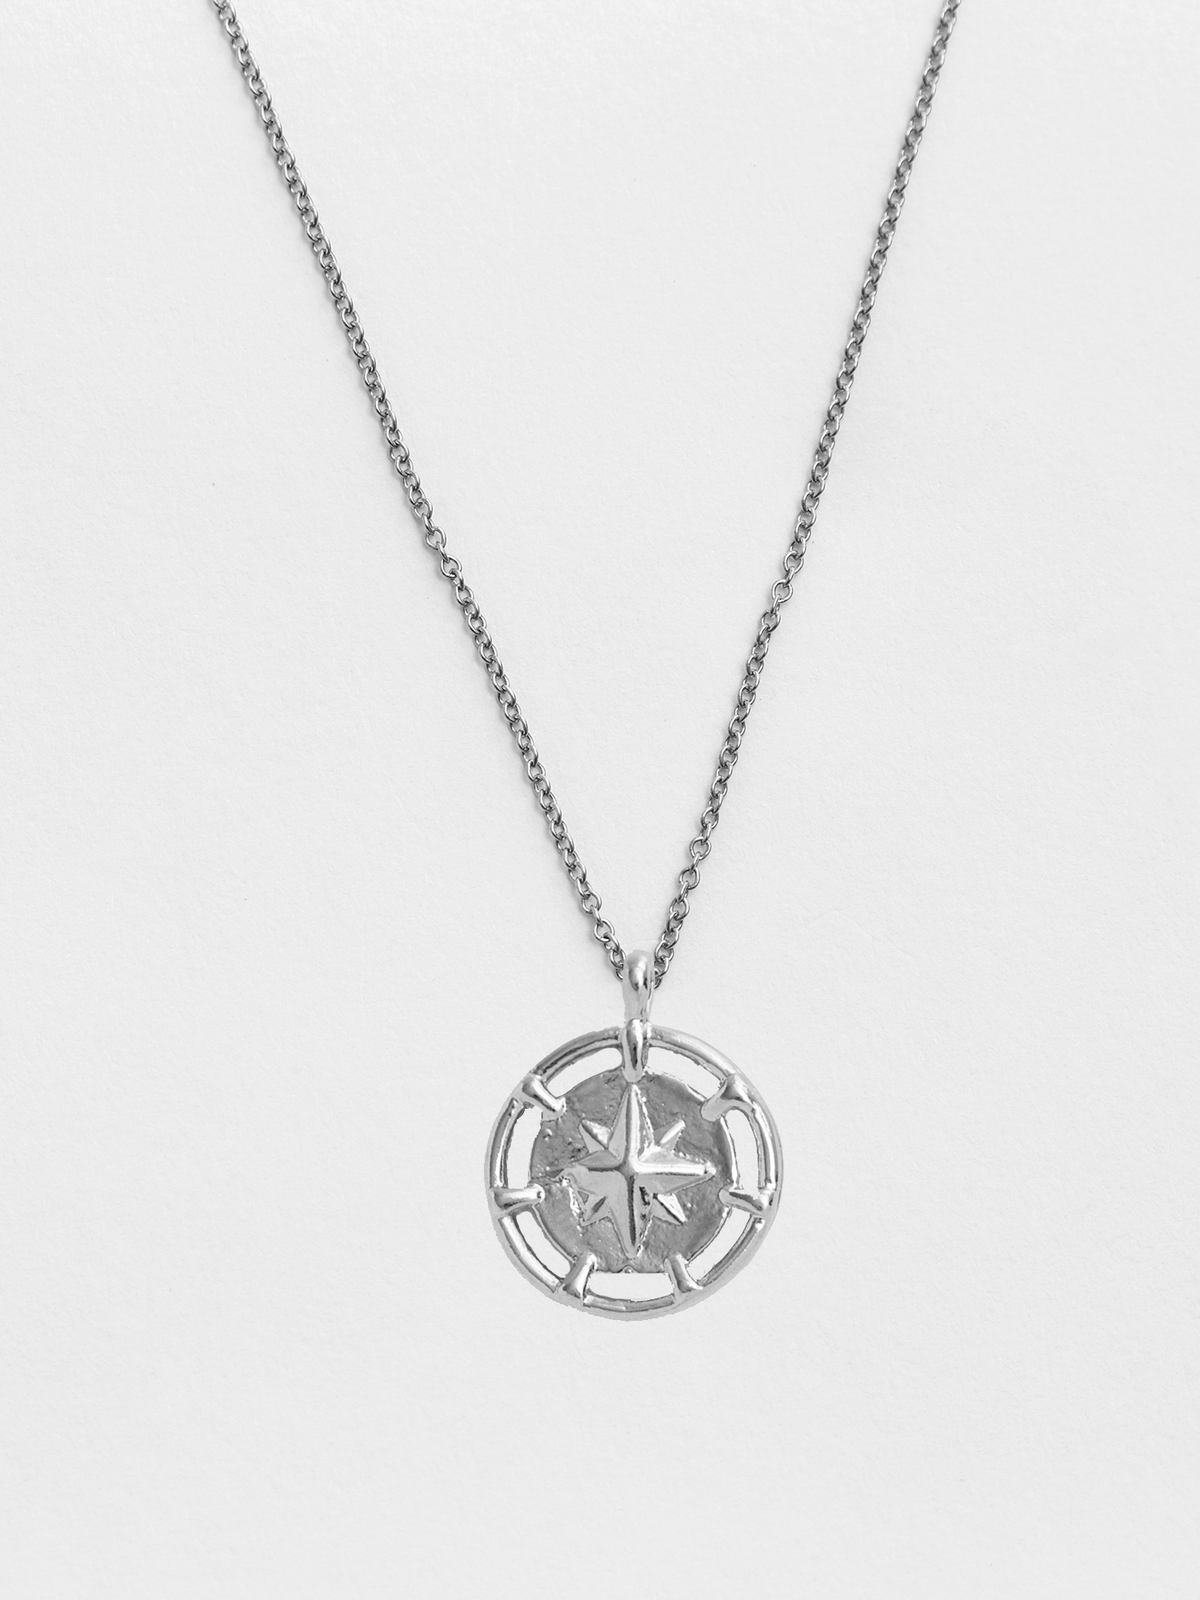 Compass Silver Pendant Pendant Necklace